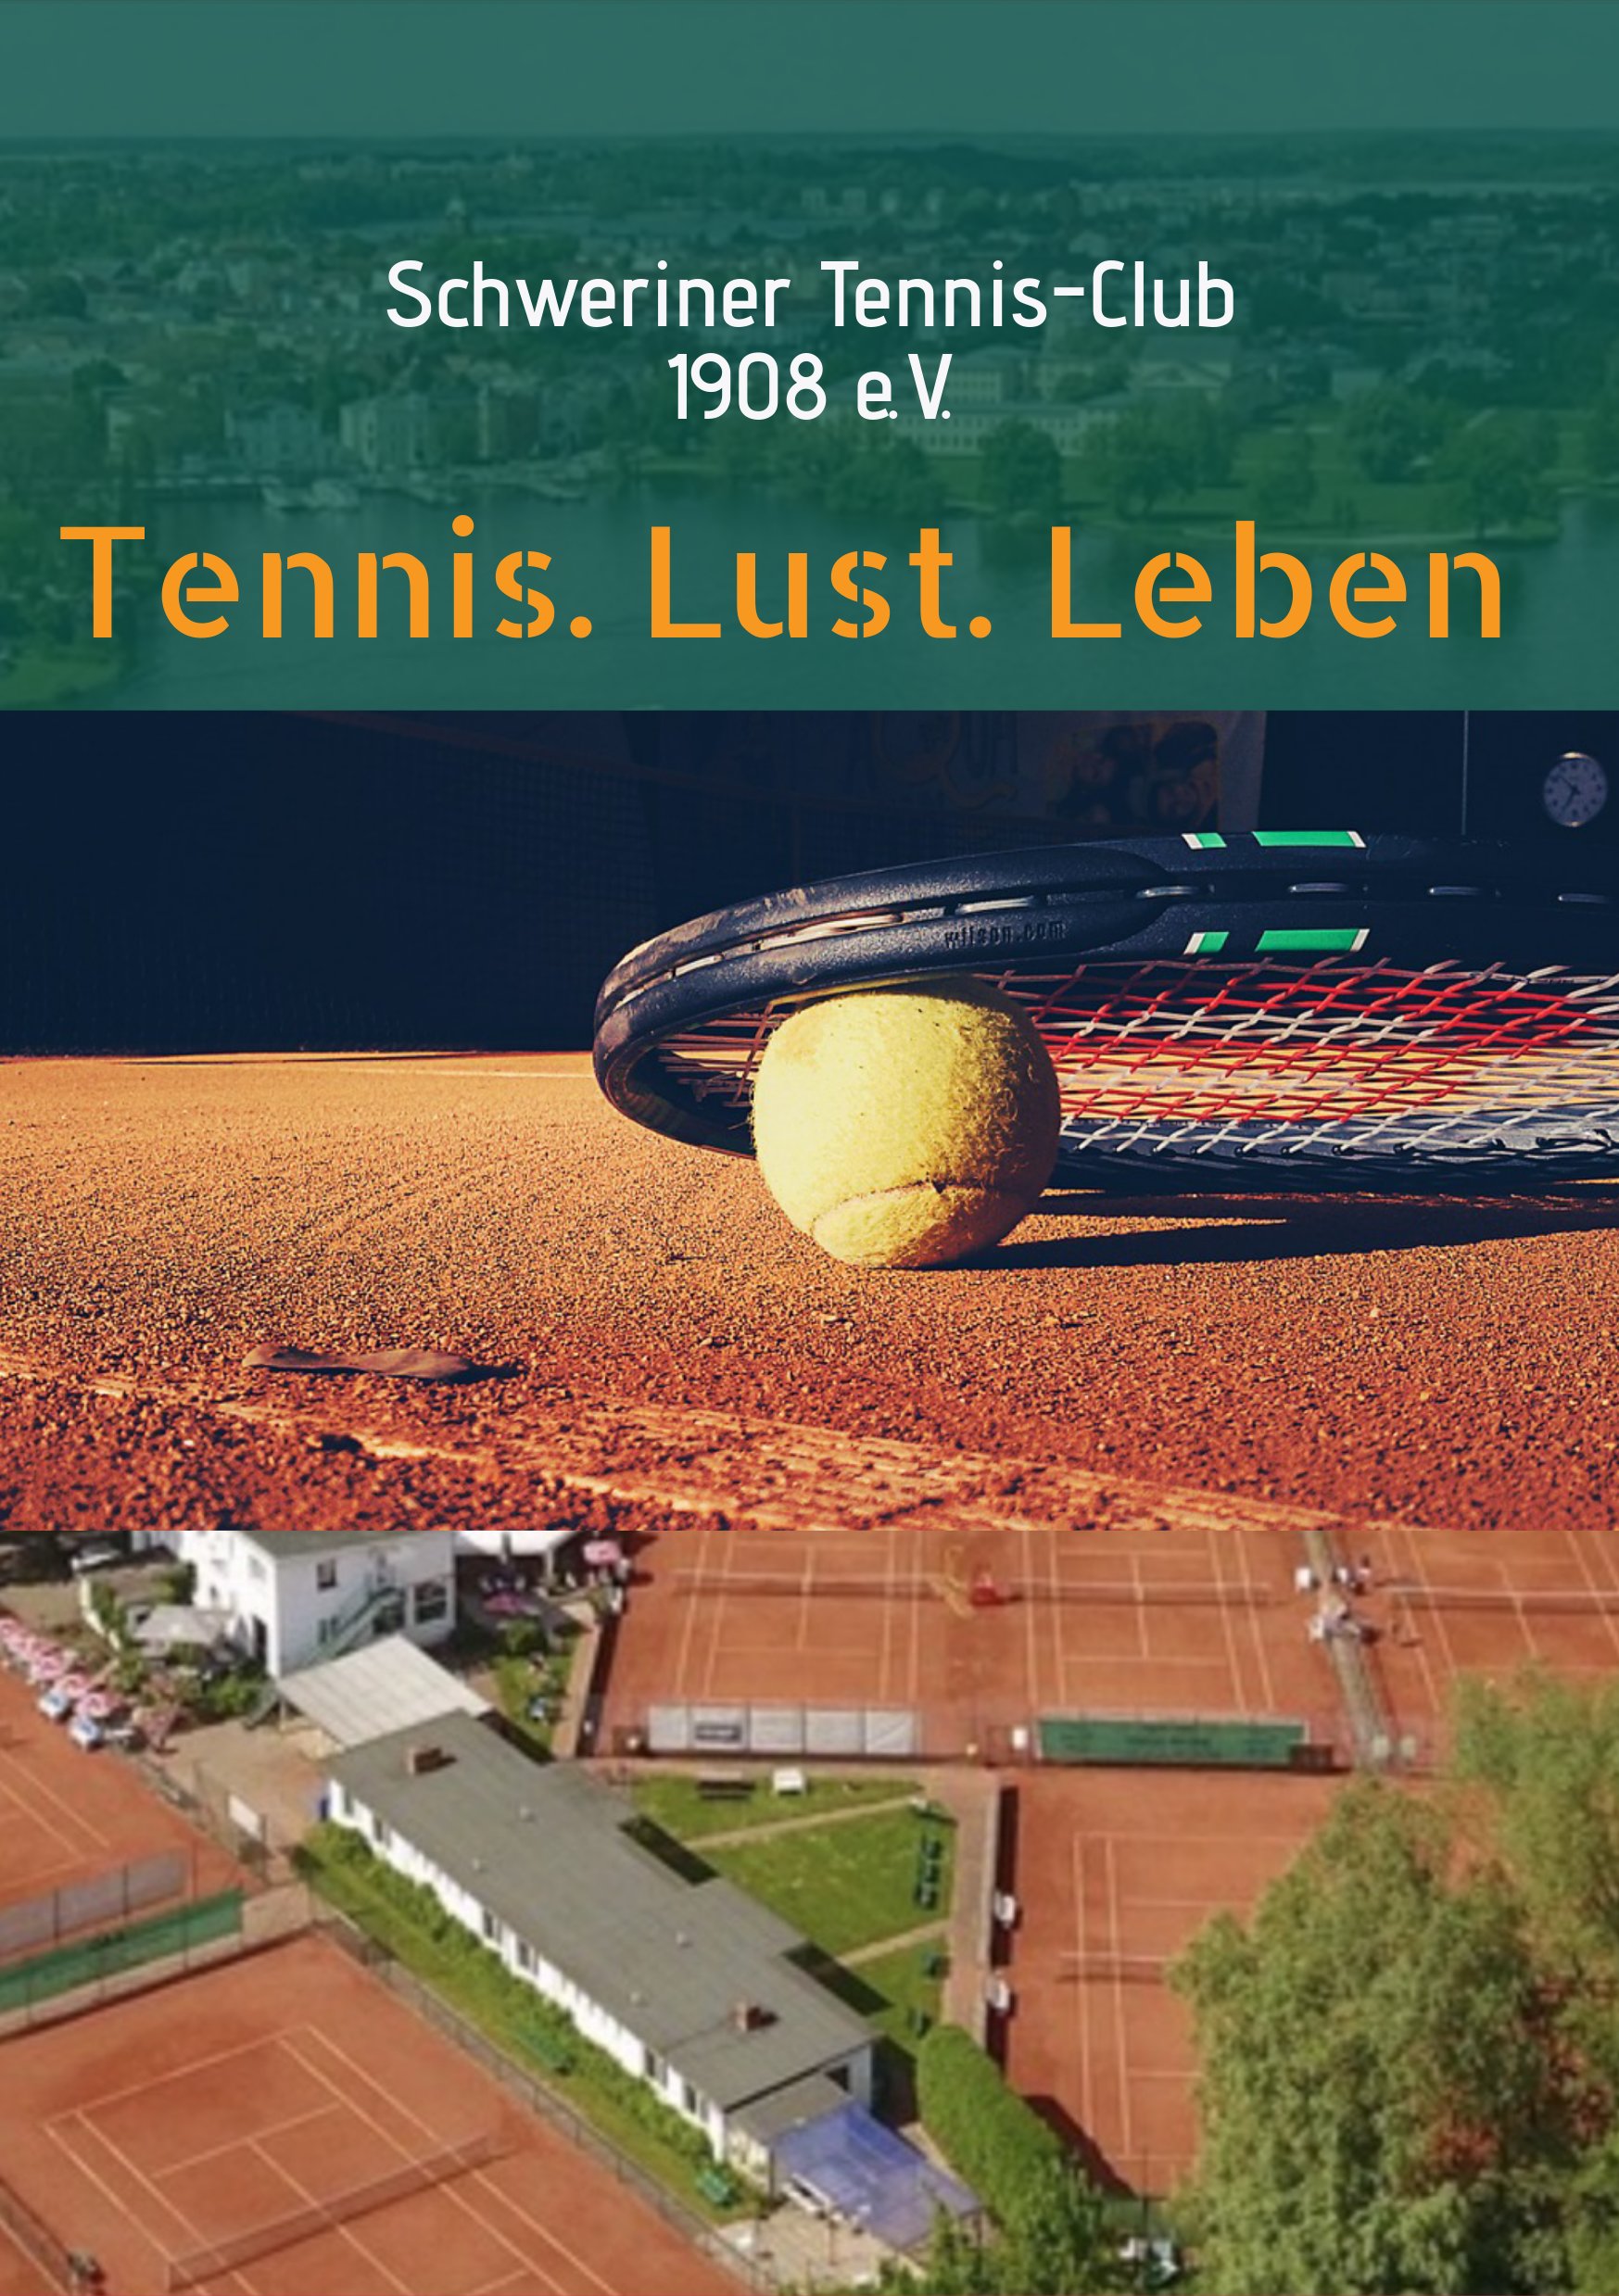 Schweriner Tennis-Club 1908 e.V.